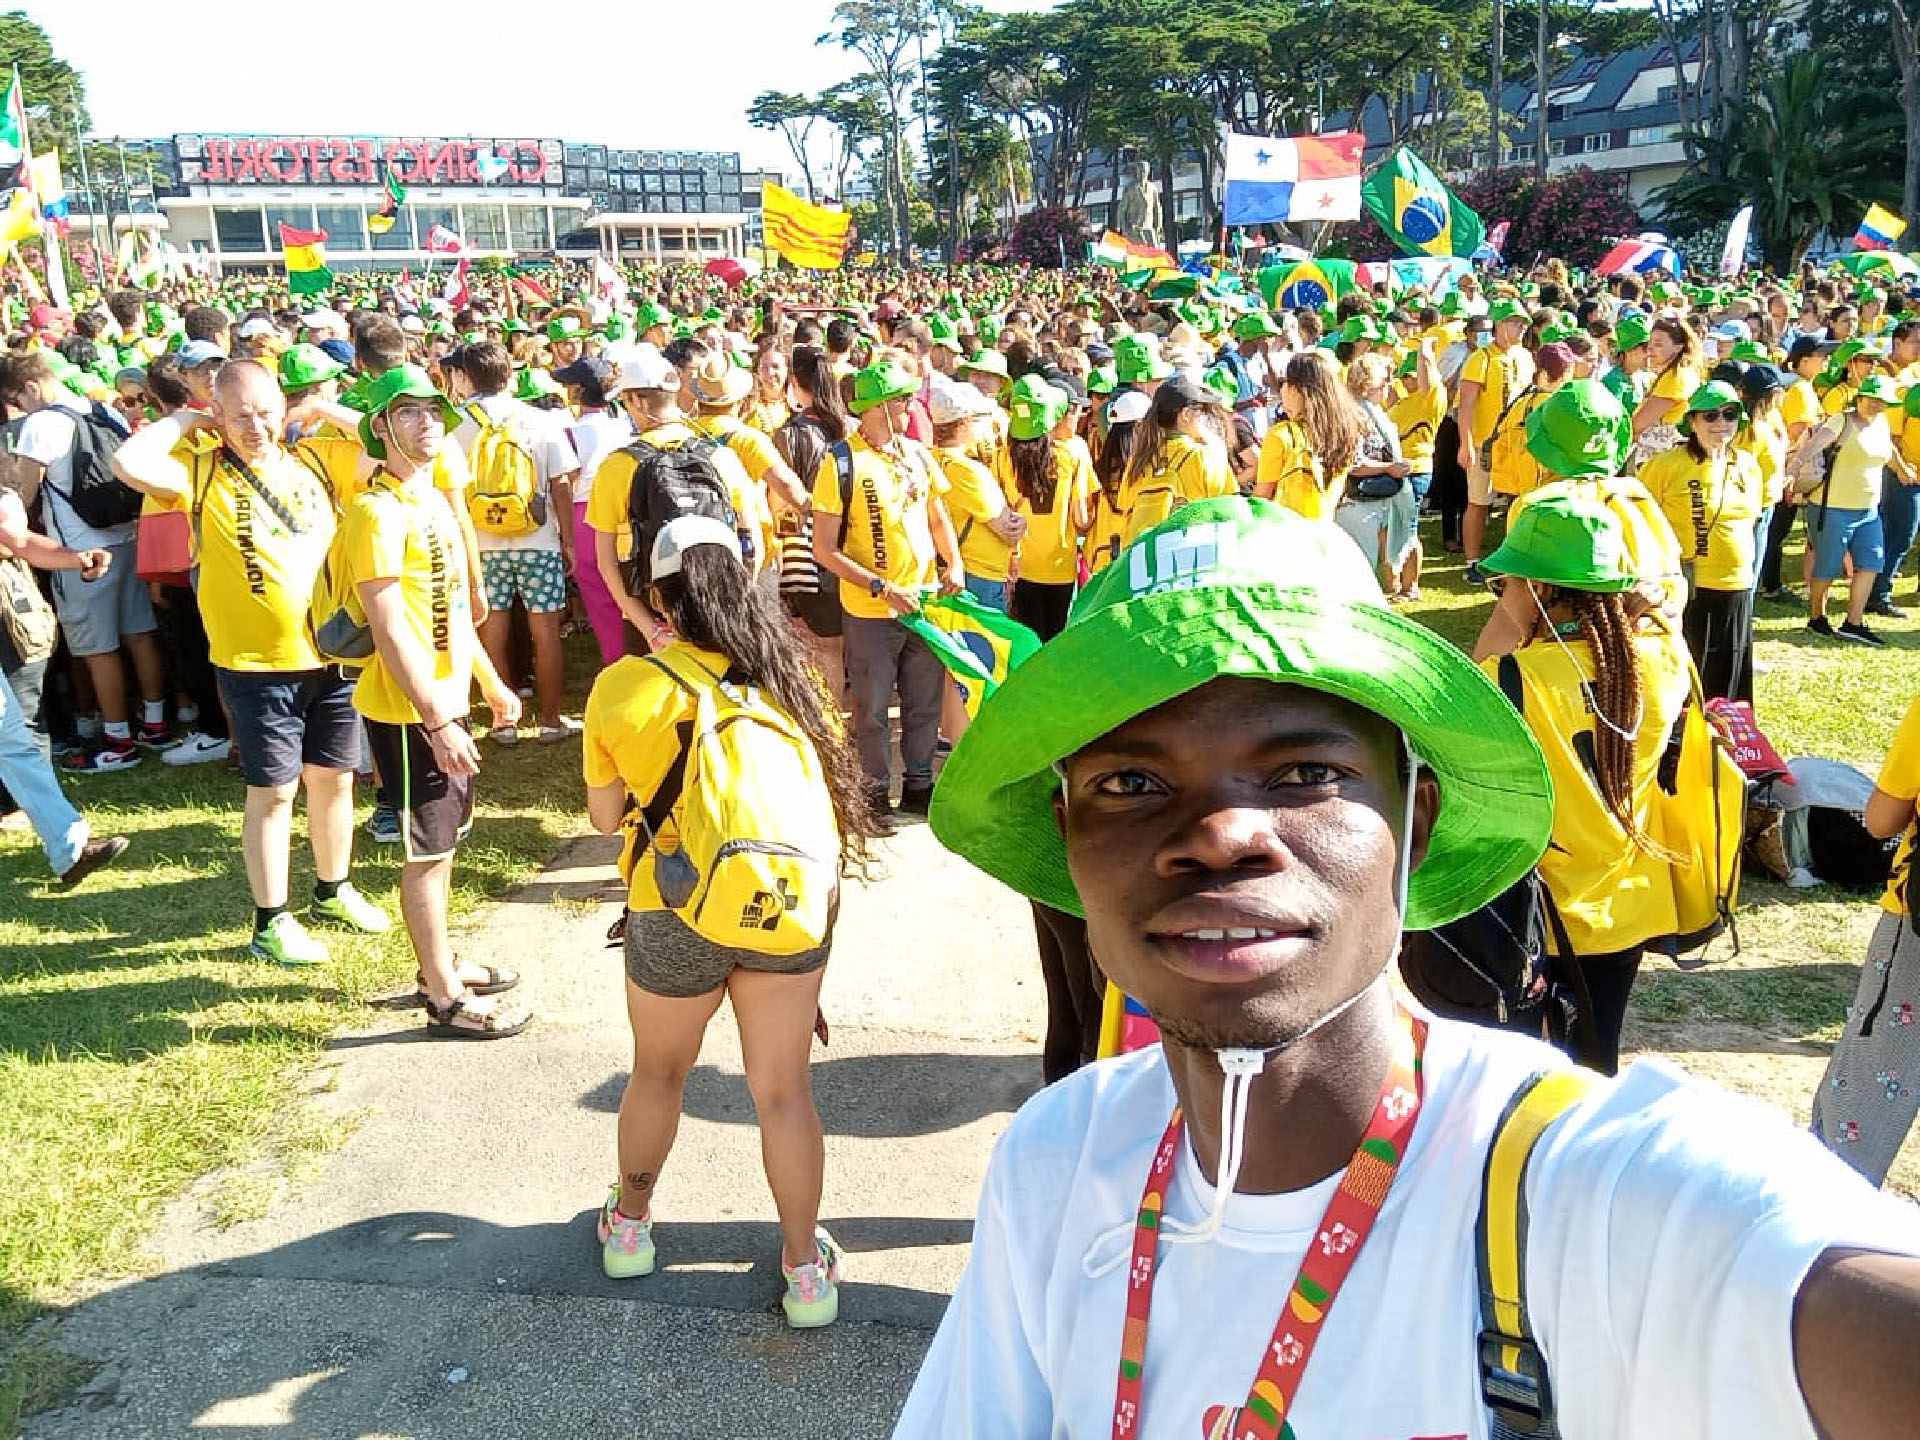 Fabrice de la délégation togolaise s'immortalise lors d'un regroupement de jeunes | DR